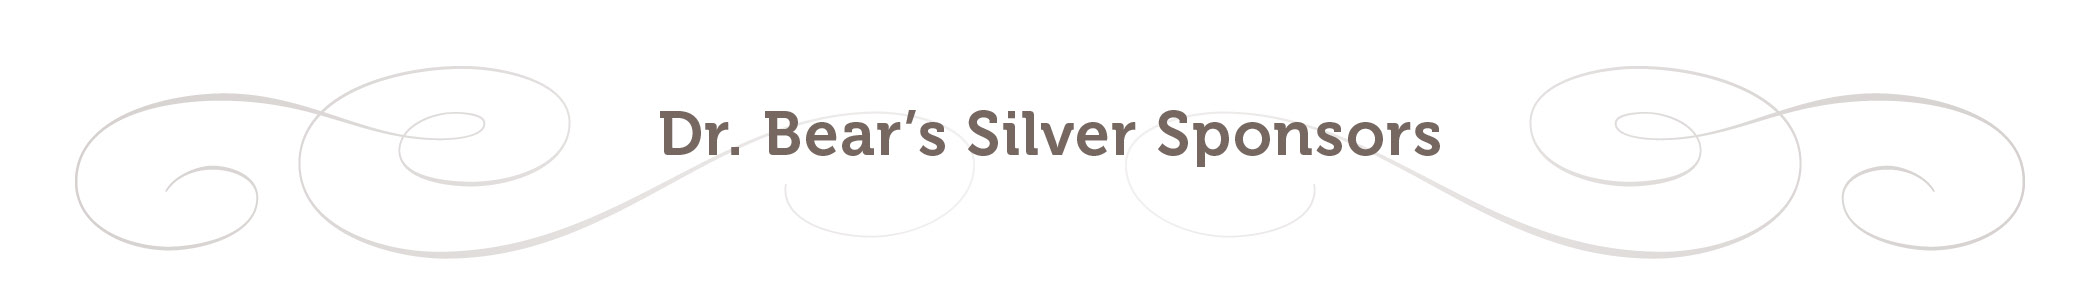 silver s sponsor